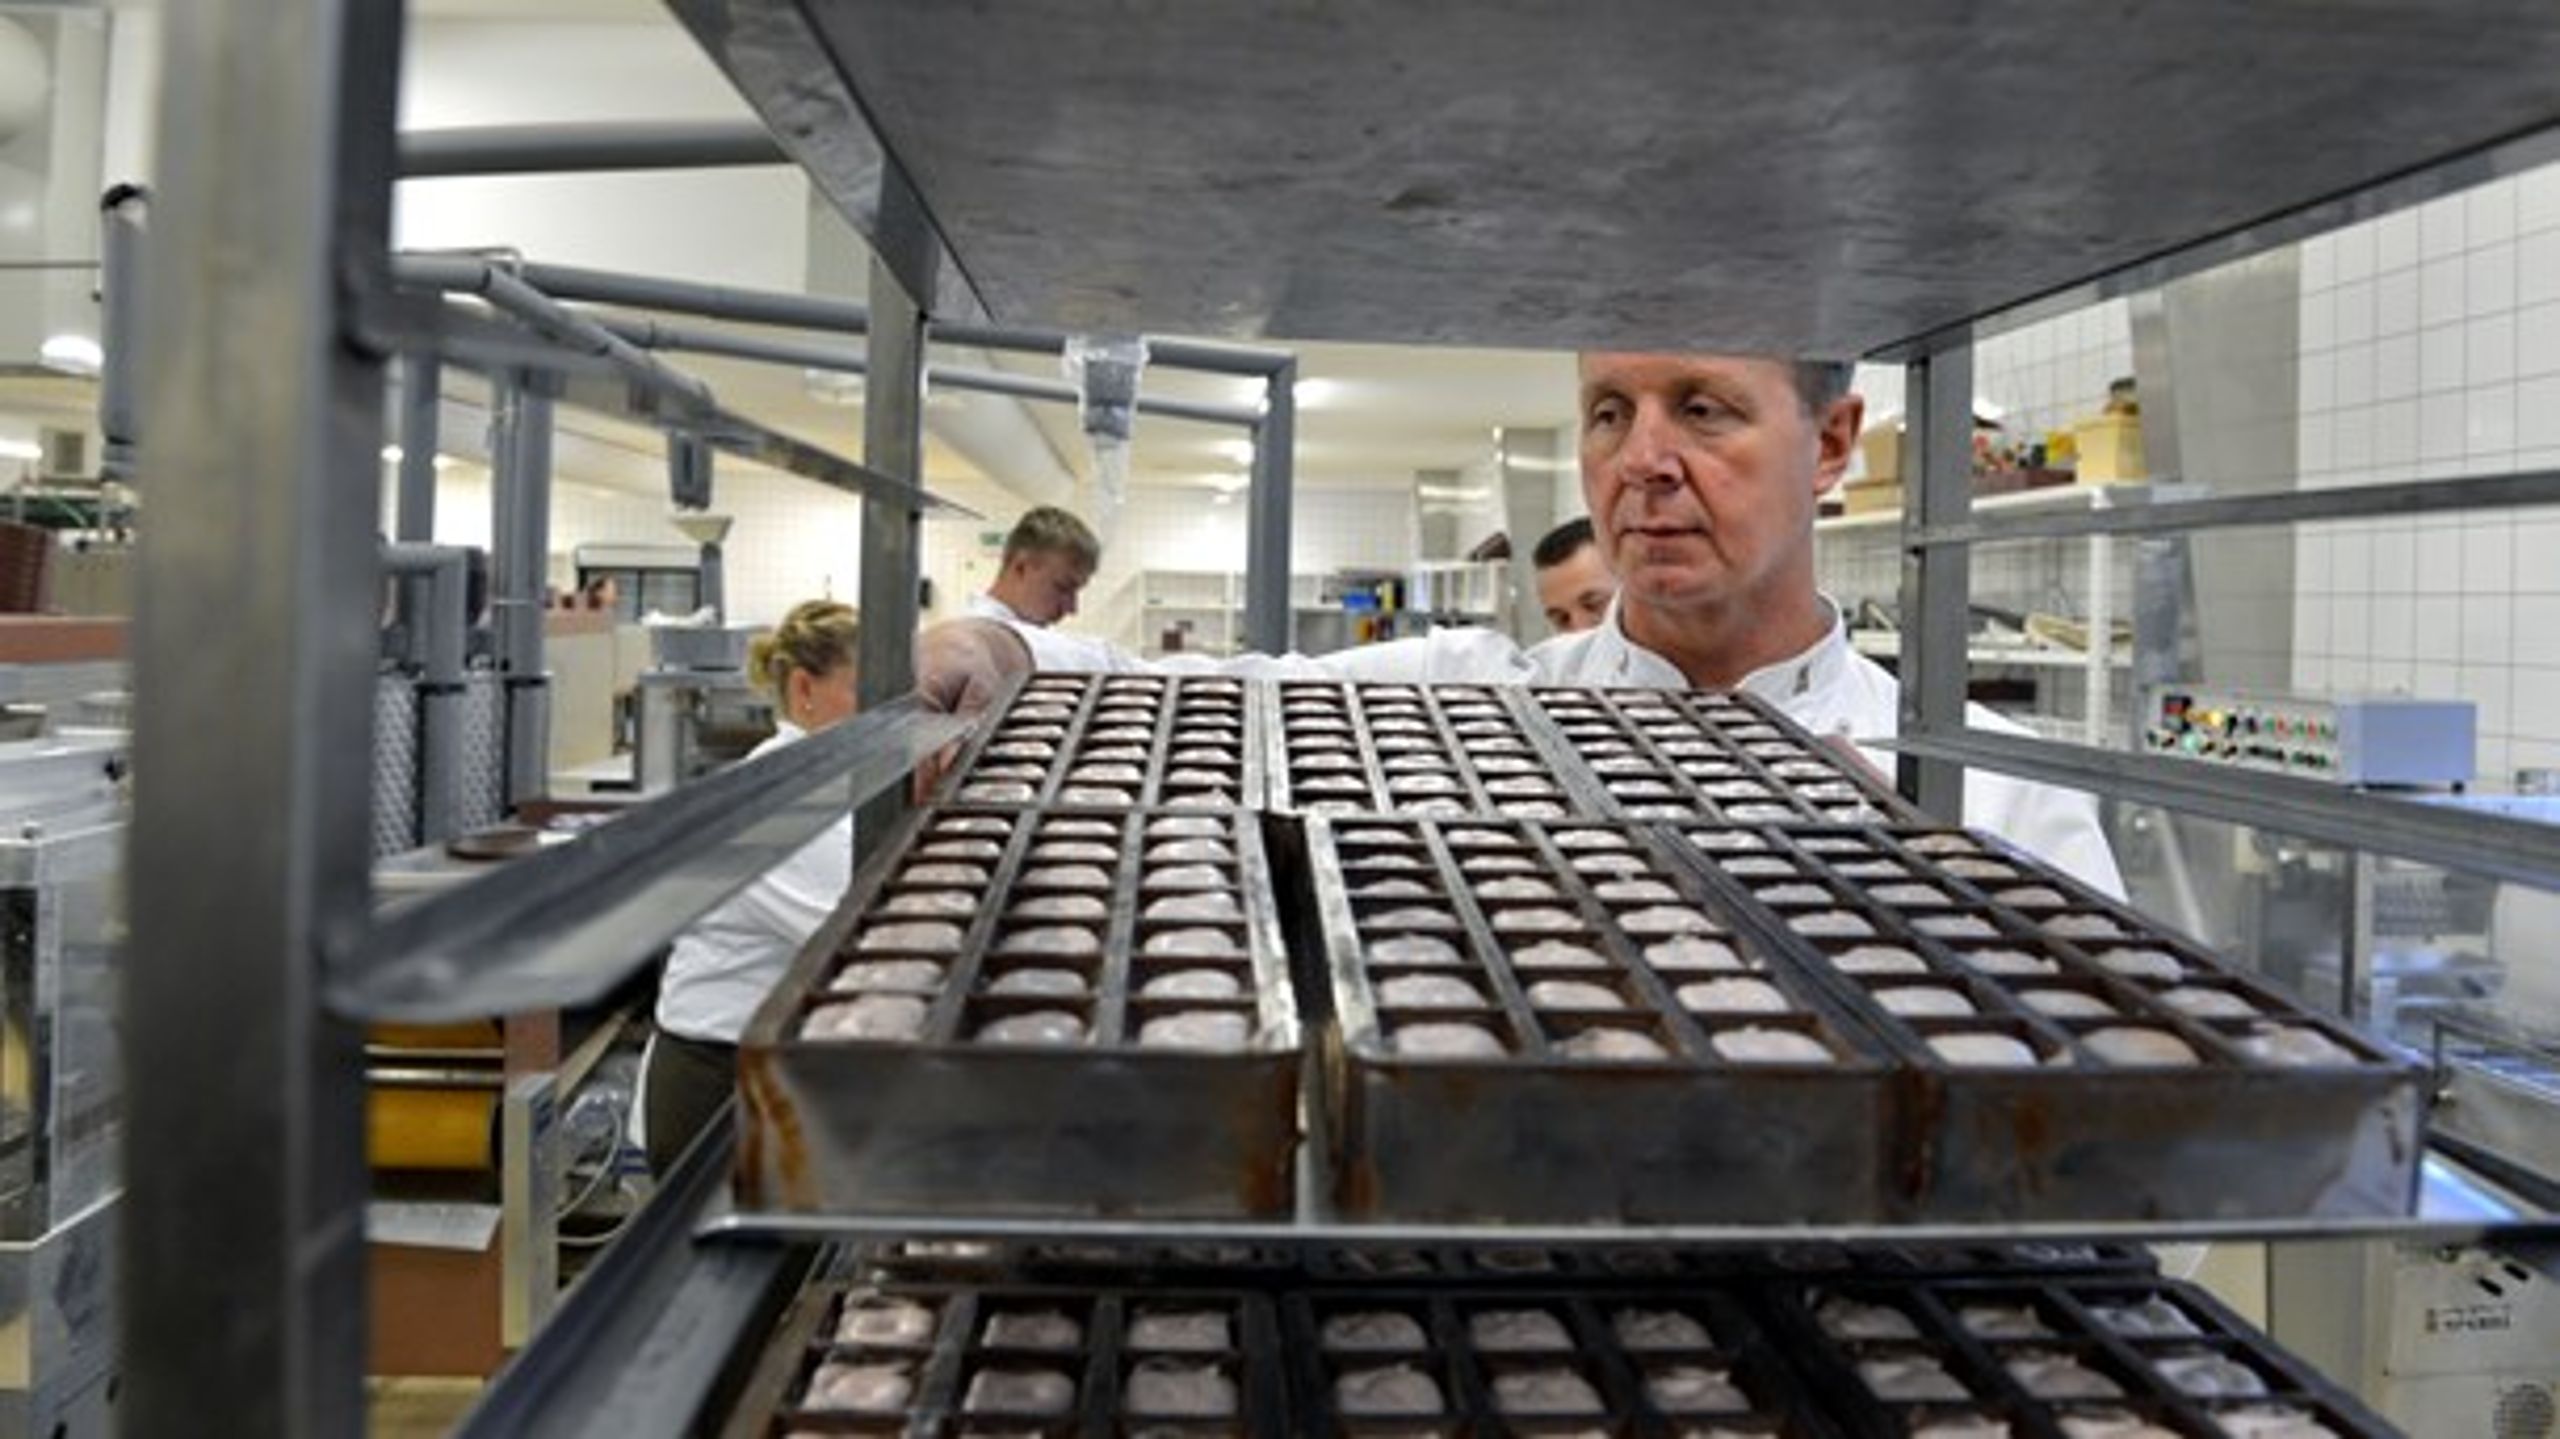 Danmark har som det eneste land&nbsp;en chokoladeafgift på cirka 26 kroner per kilo. Det hæmmer danske fabrikanter i at sælge chokoladen både herhjemme og i udlandet - og det koster arbejdspladser, mener Benedikte Kiær.&nbsp;<br>